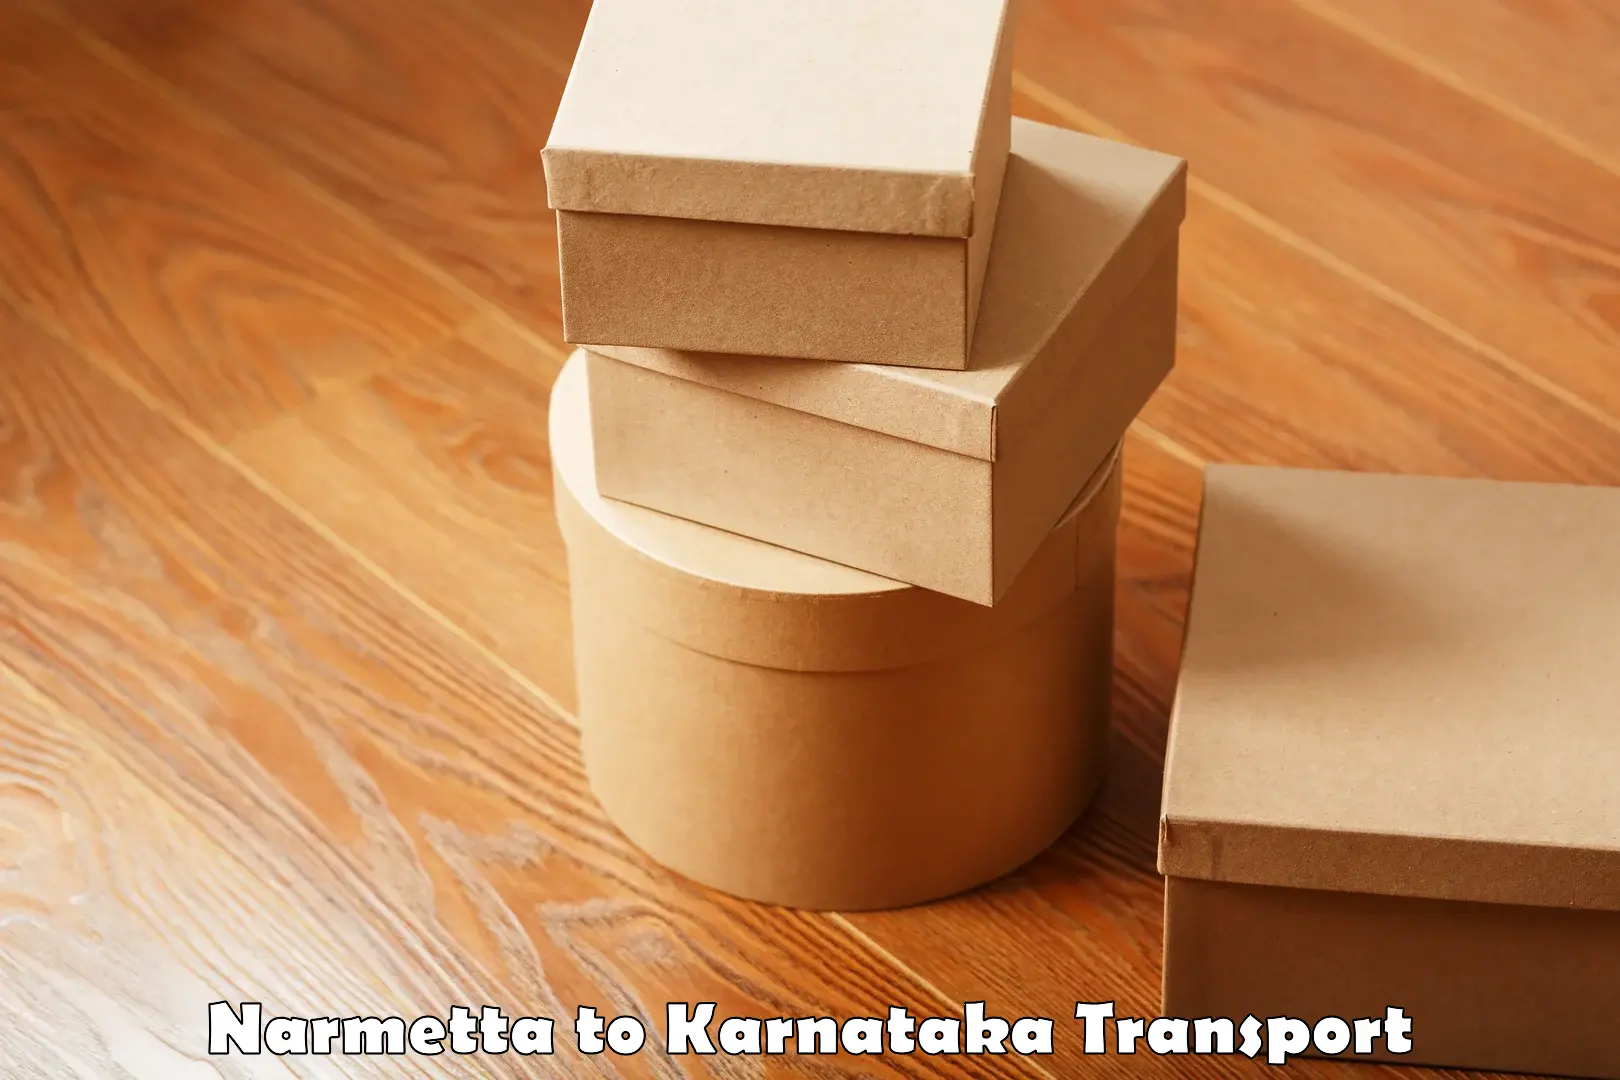 Commercial transport service Narmetta to Krishnarajanagara